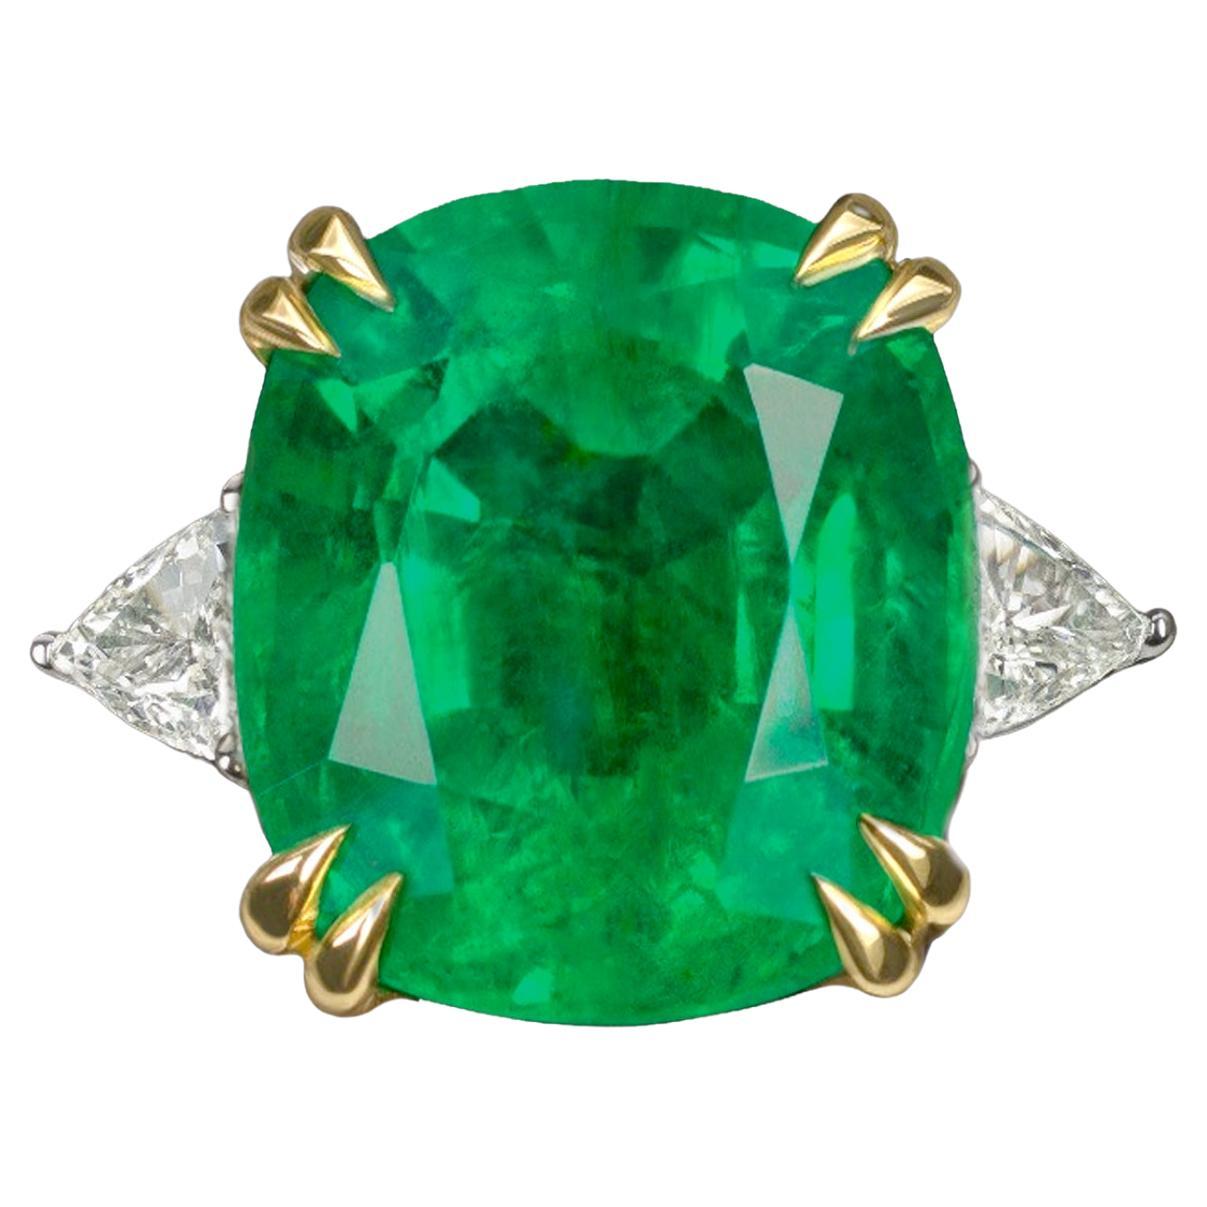 GIA-zertifizierter Solitär-Ring mit 6 Karat grünem Smaragd im Kissenschliff